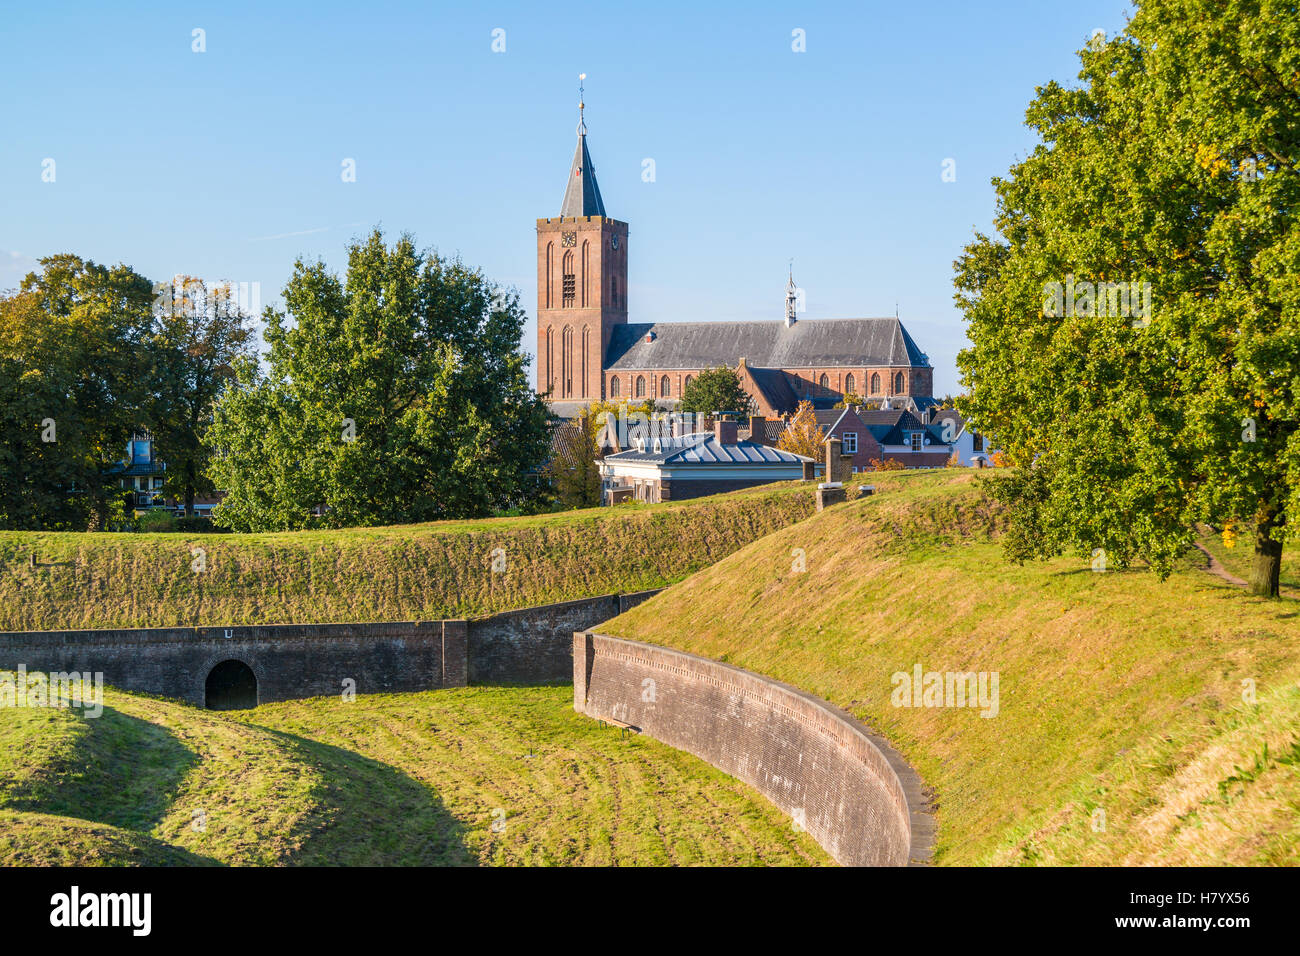 Grande église et rempart avec bastion Promers dans la vieille ville fortifiée de Naarden, Hollande du Nord, Pays-Bas Banque D'Images